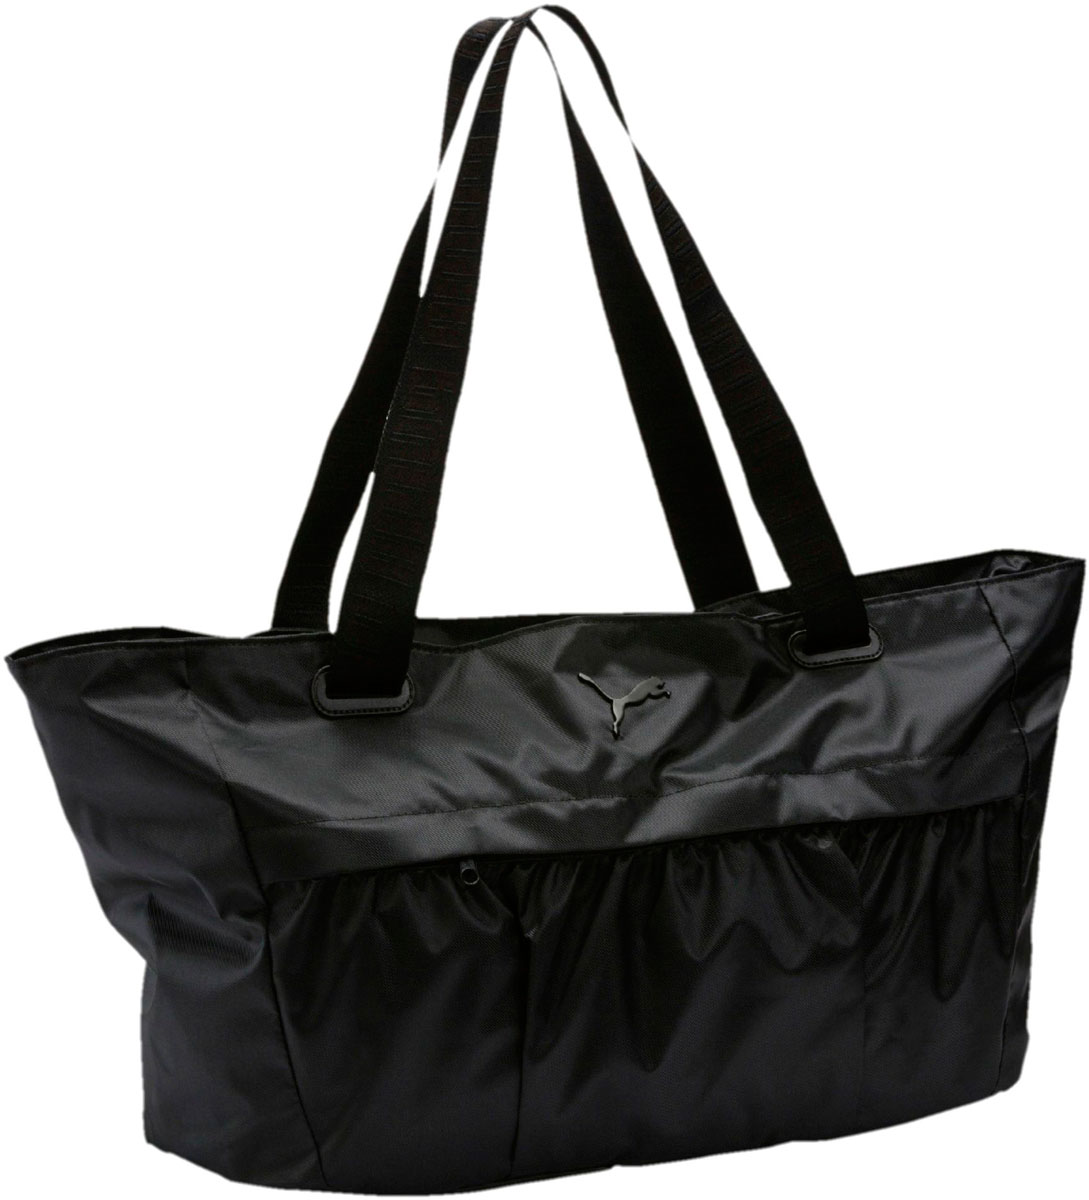 Сумка женская Puma AT Workout Bag, цвет: черный, 28 л. 07504701